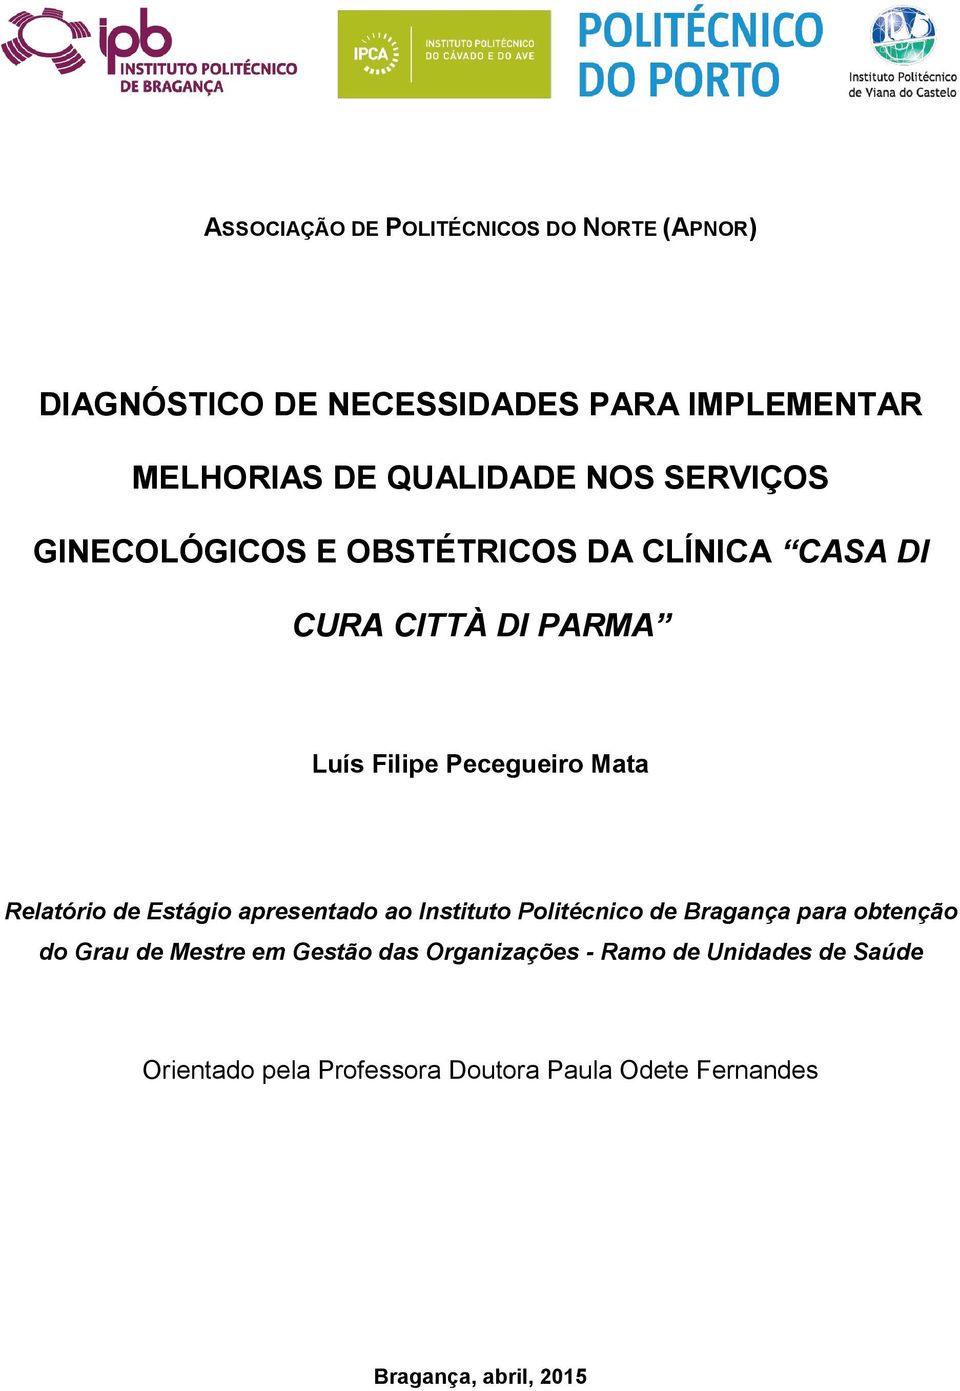 Relatório de Estágio apresentado ao Instituto Politécnico de Bragança para obtenção do Grau de Mestre em Gestão